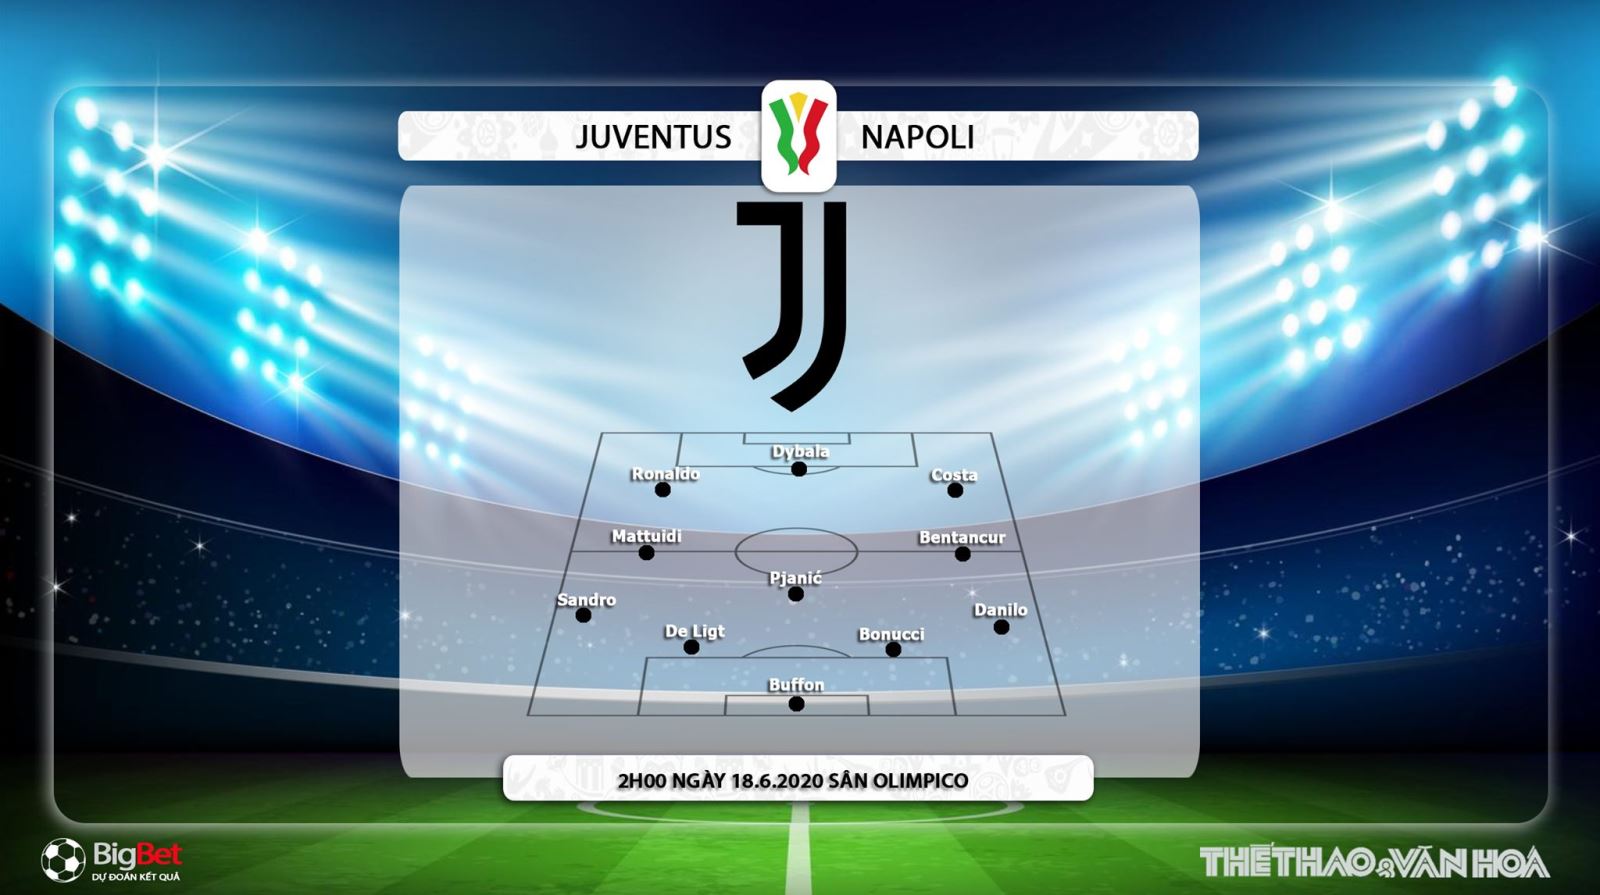 bóng đá, bong da, bóng đá hôm nay, nhận định bóng đá, dự đoán, nhận định, Juventus vs Napoli, kèo bóng đá, juventus, napoli